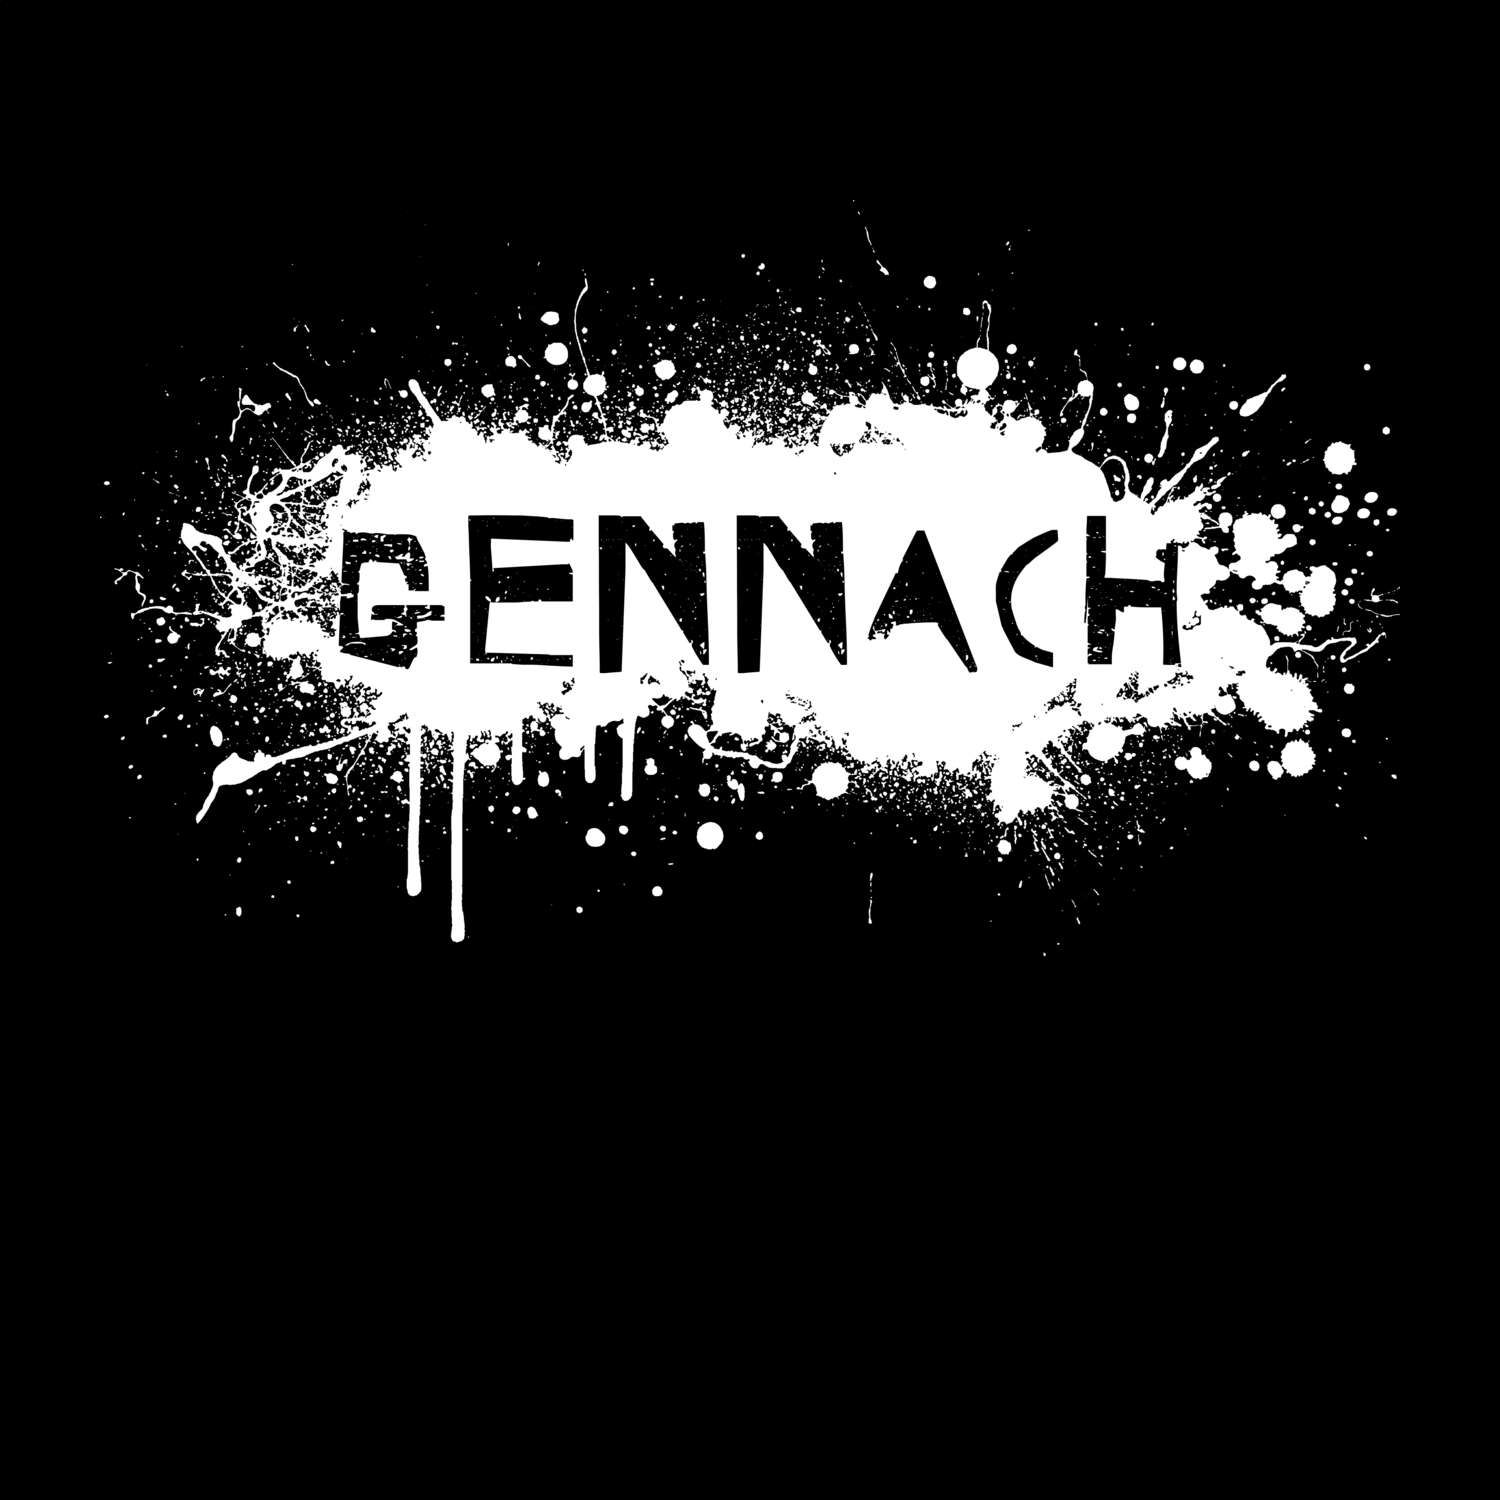 Gennach T-Shirt »Paint Splash Punk«